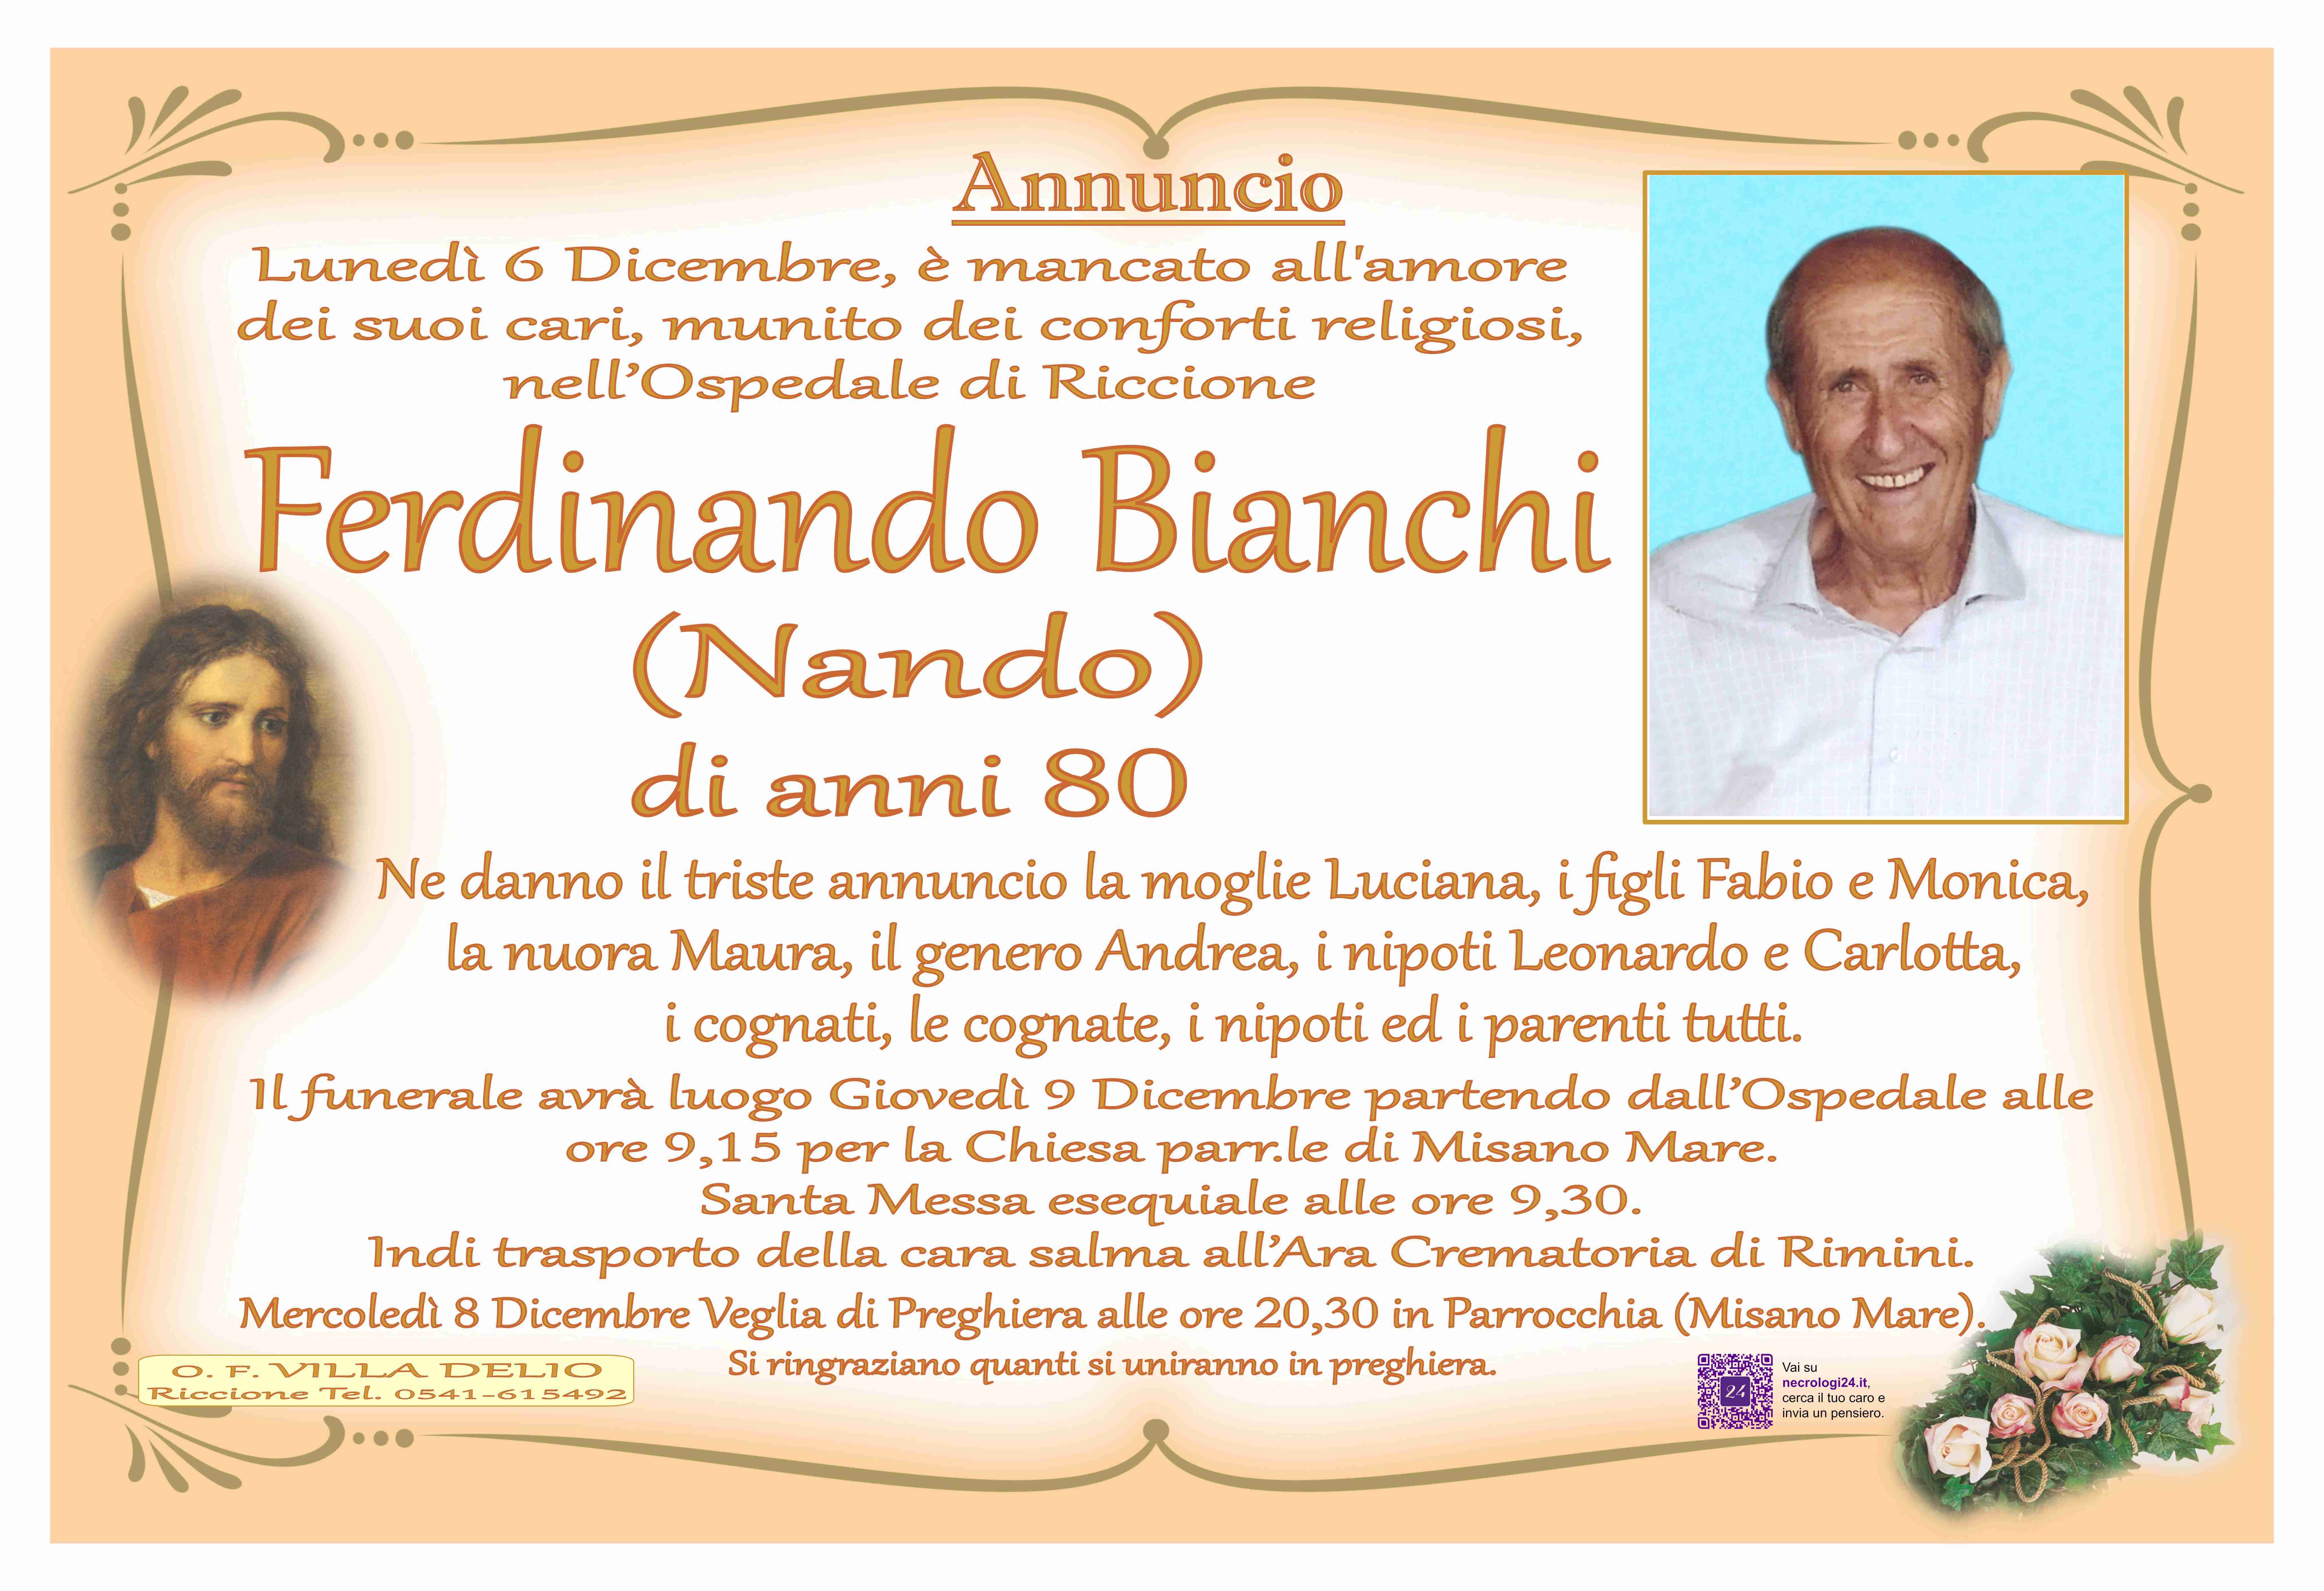 Ferdinando Bianchi